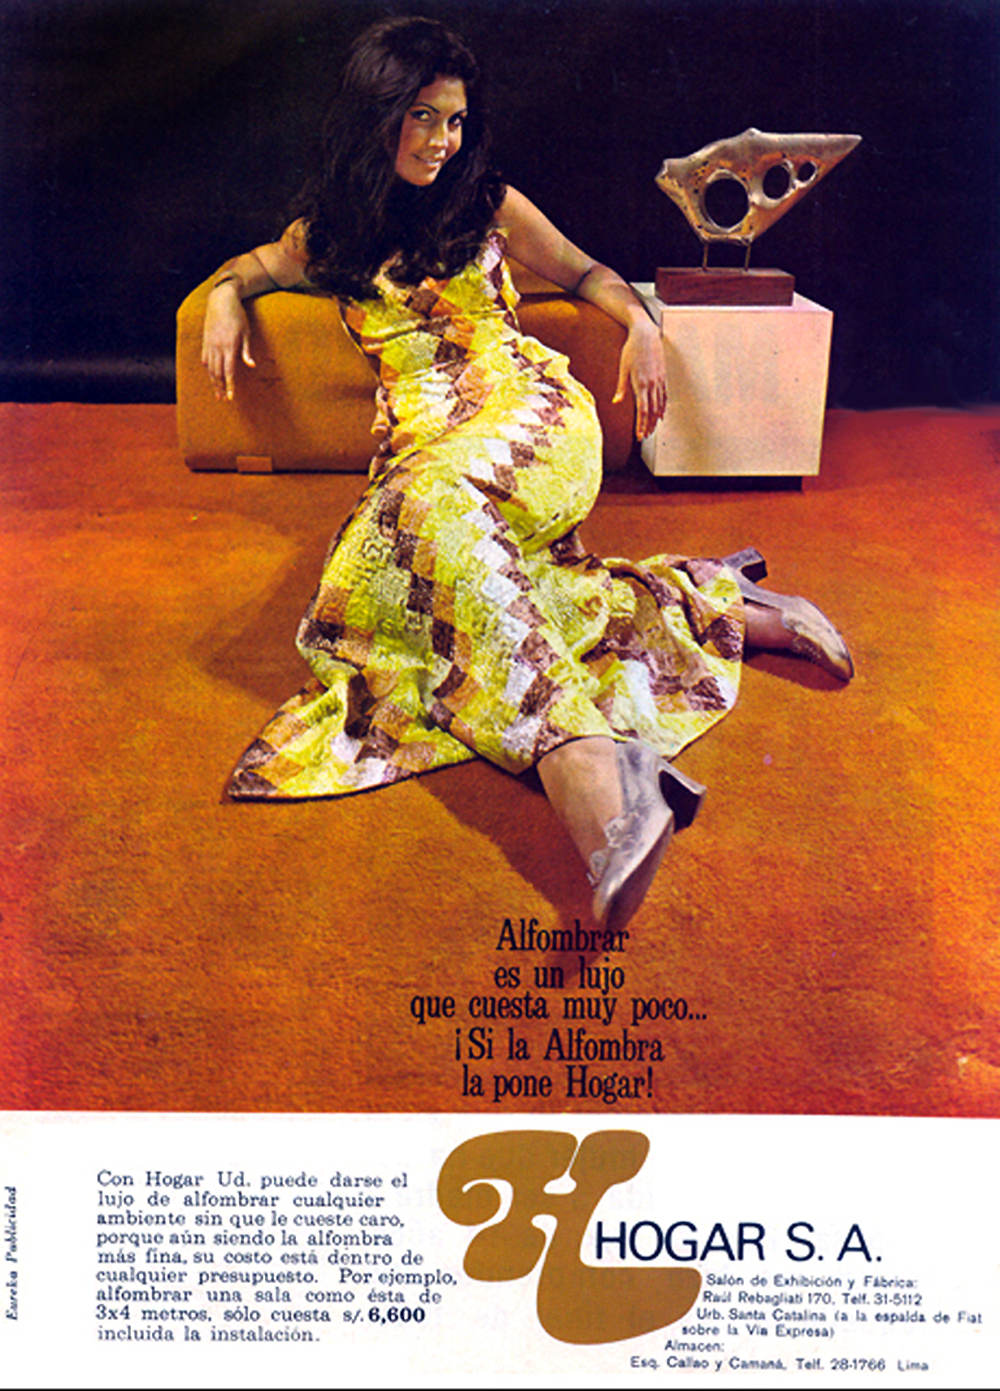 087_Peruvian carpet ad